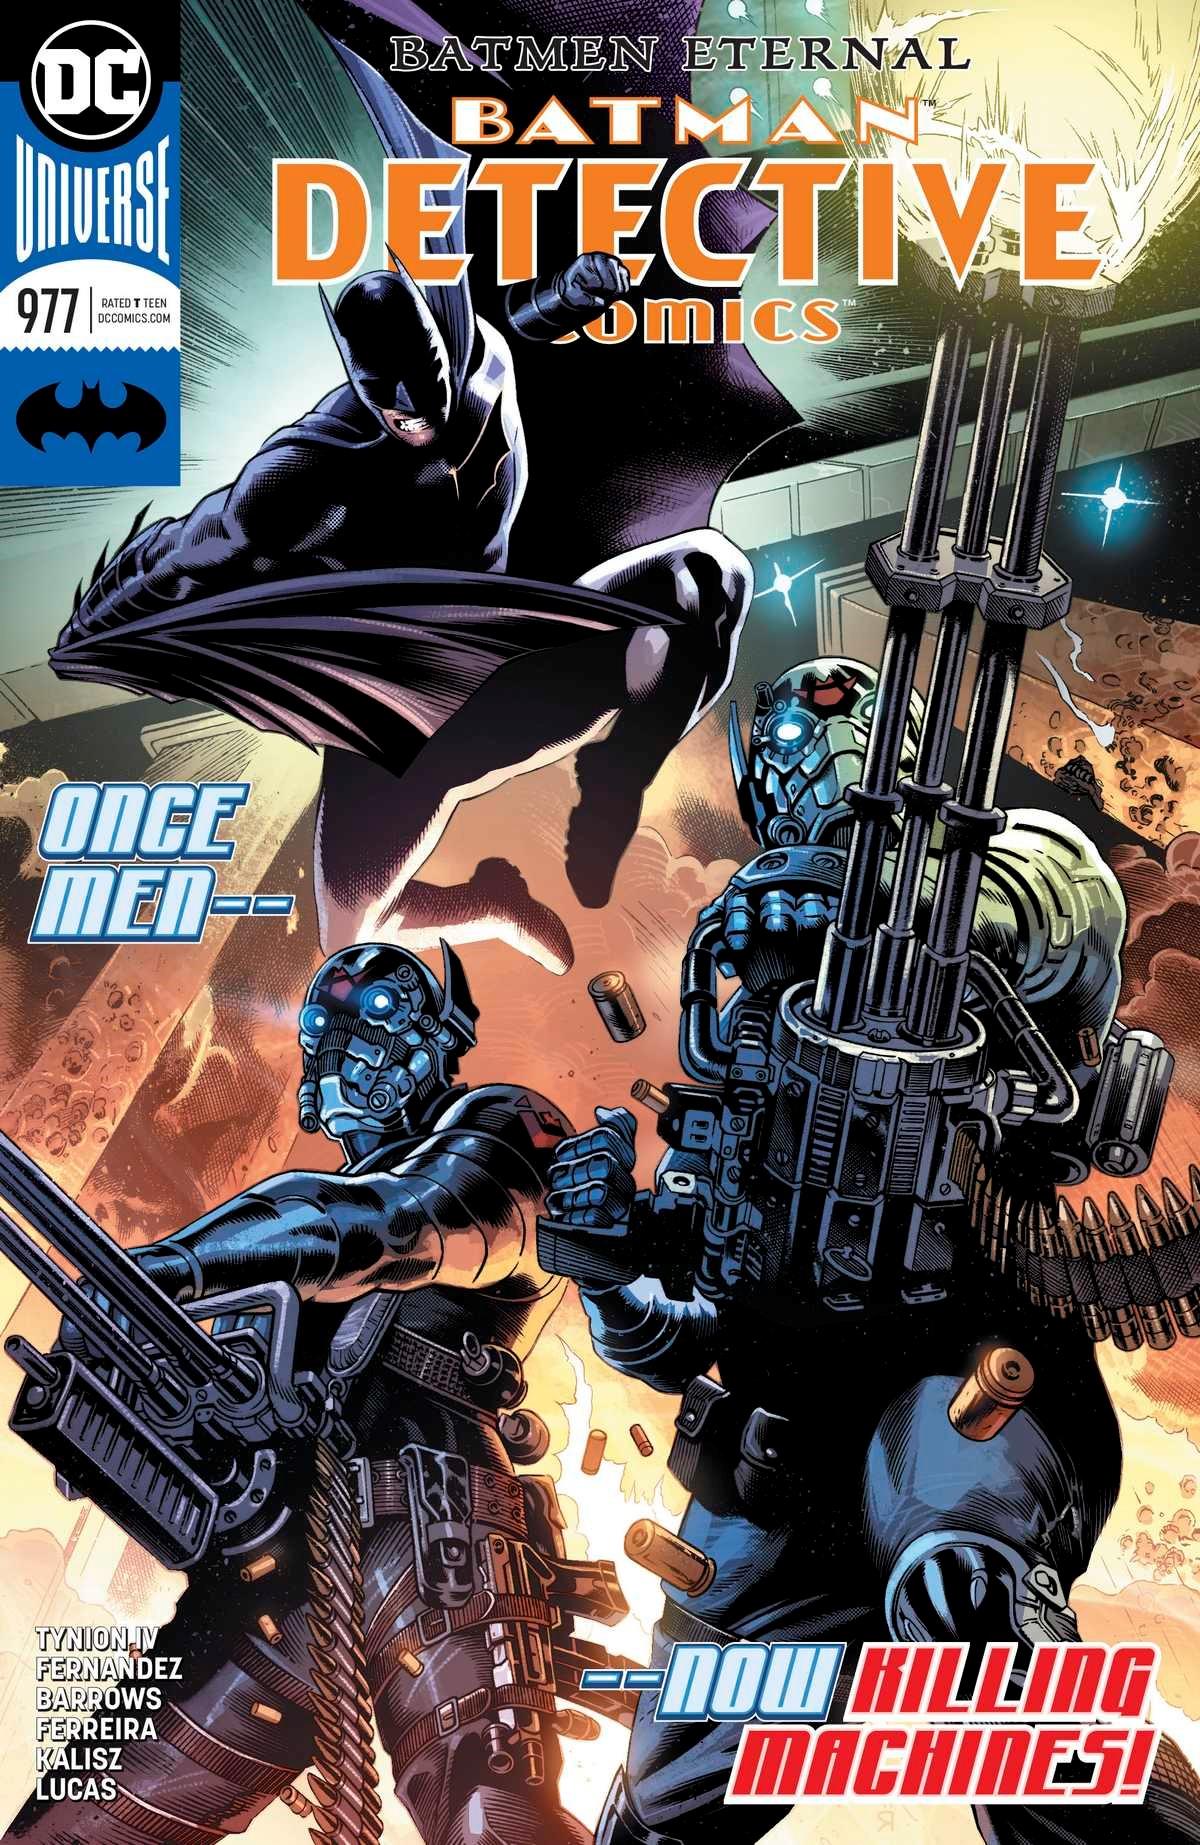 Detective Comics Vol. 1 #977